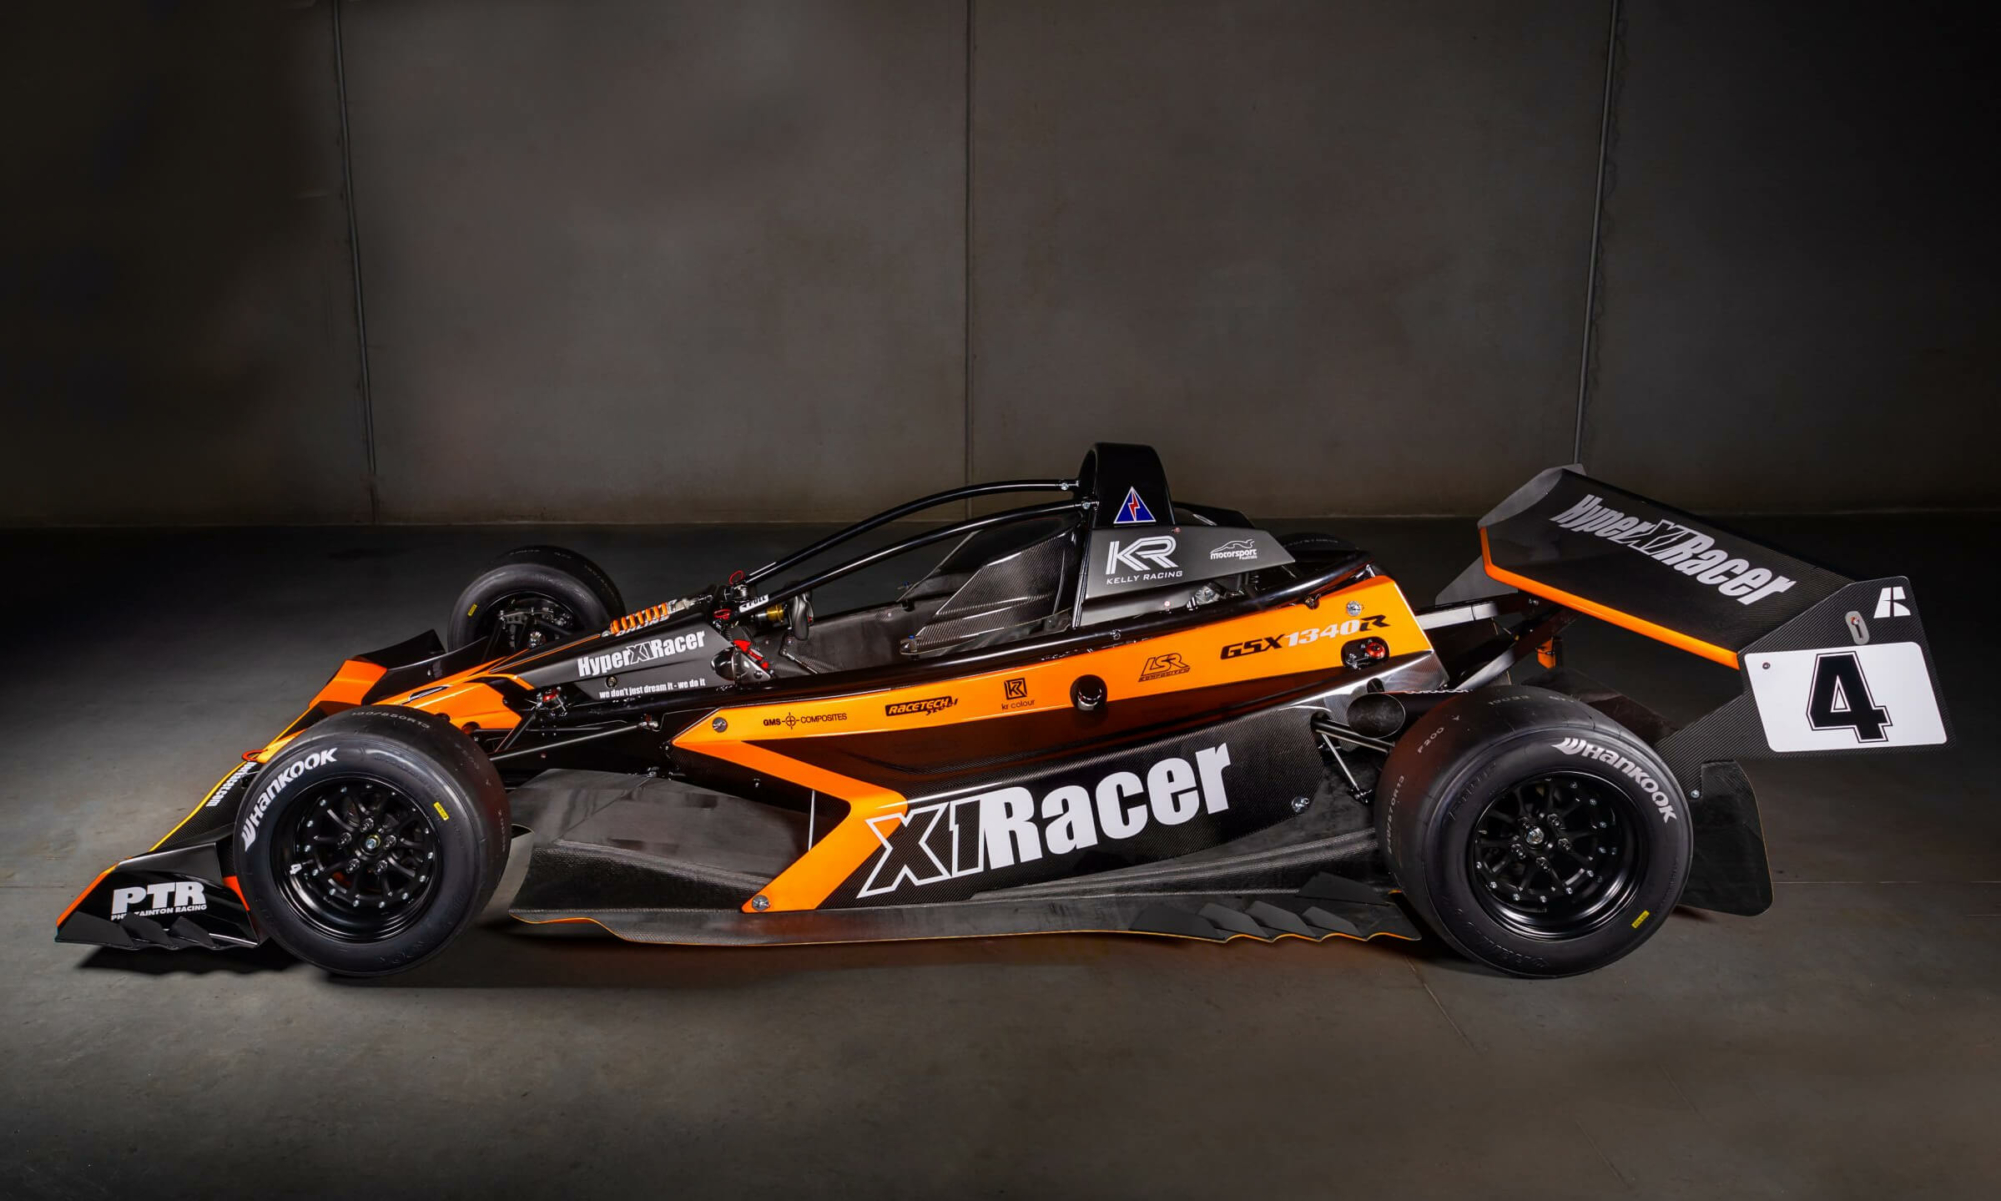 Hyper X1 Racer side